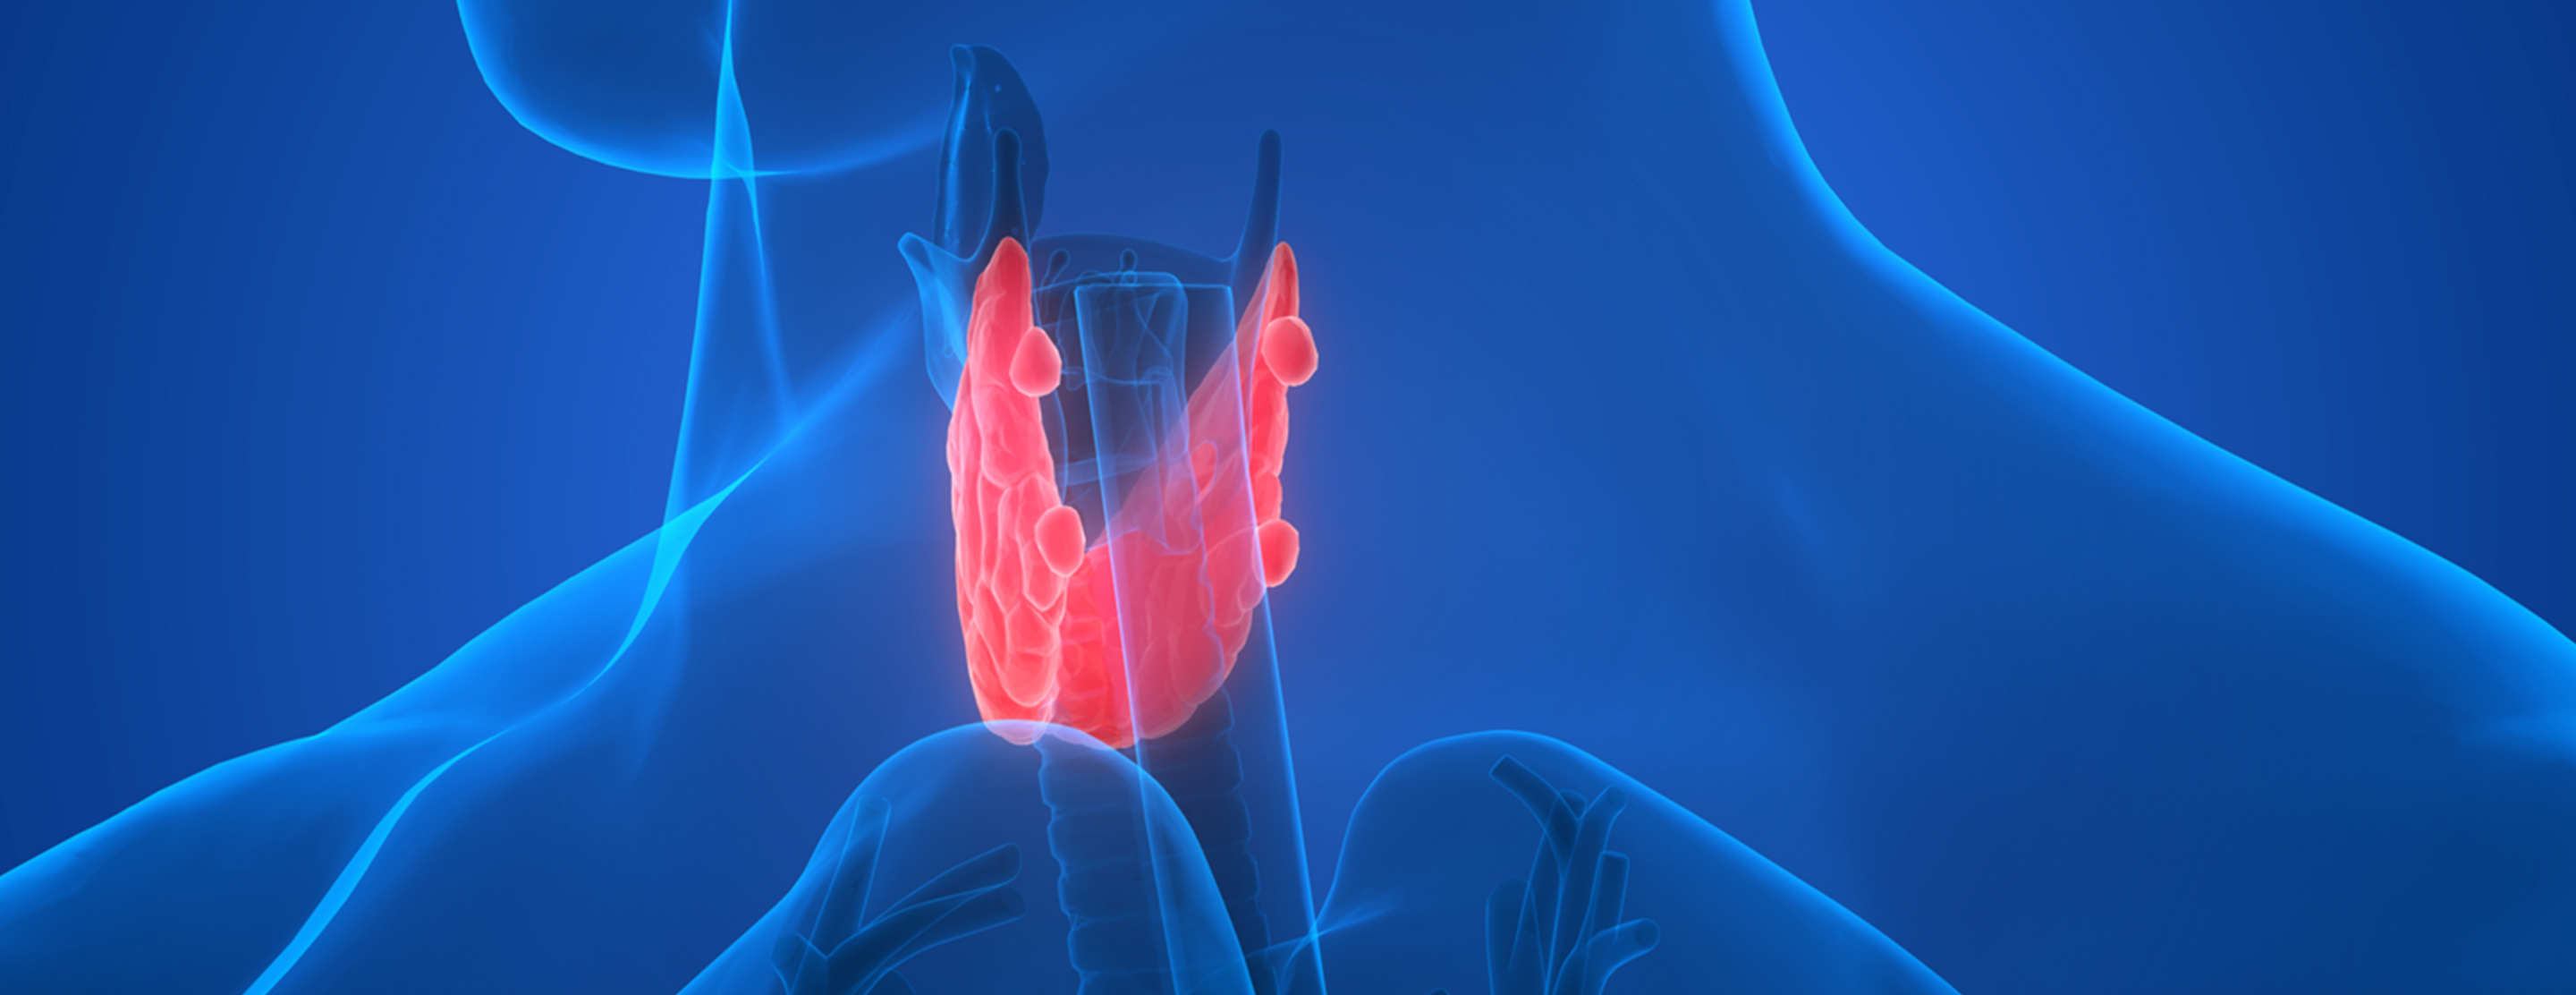 Зоб тест. Эндокринология щитовидная железа. Щитовидная железа на синем фоне. Щитовидка реклама.